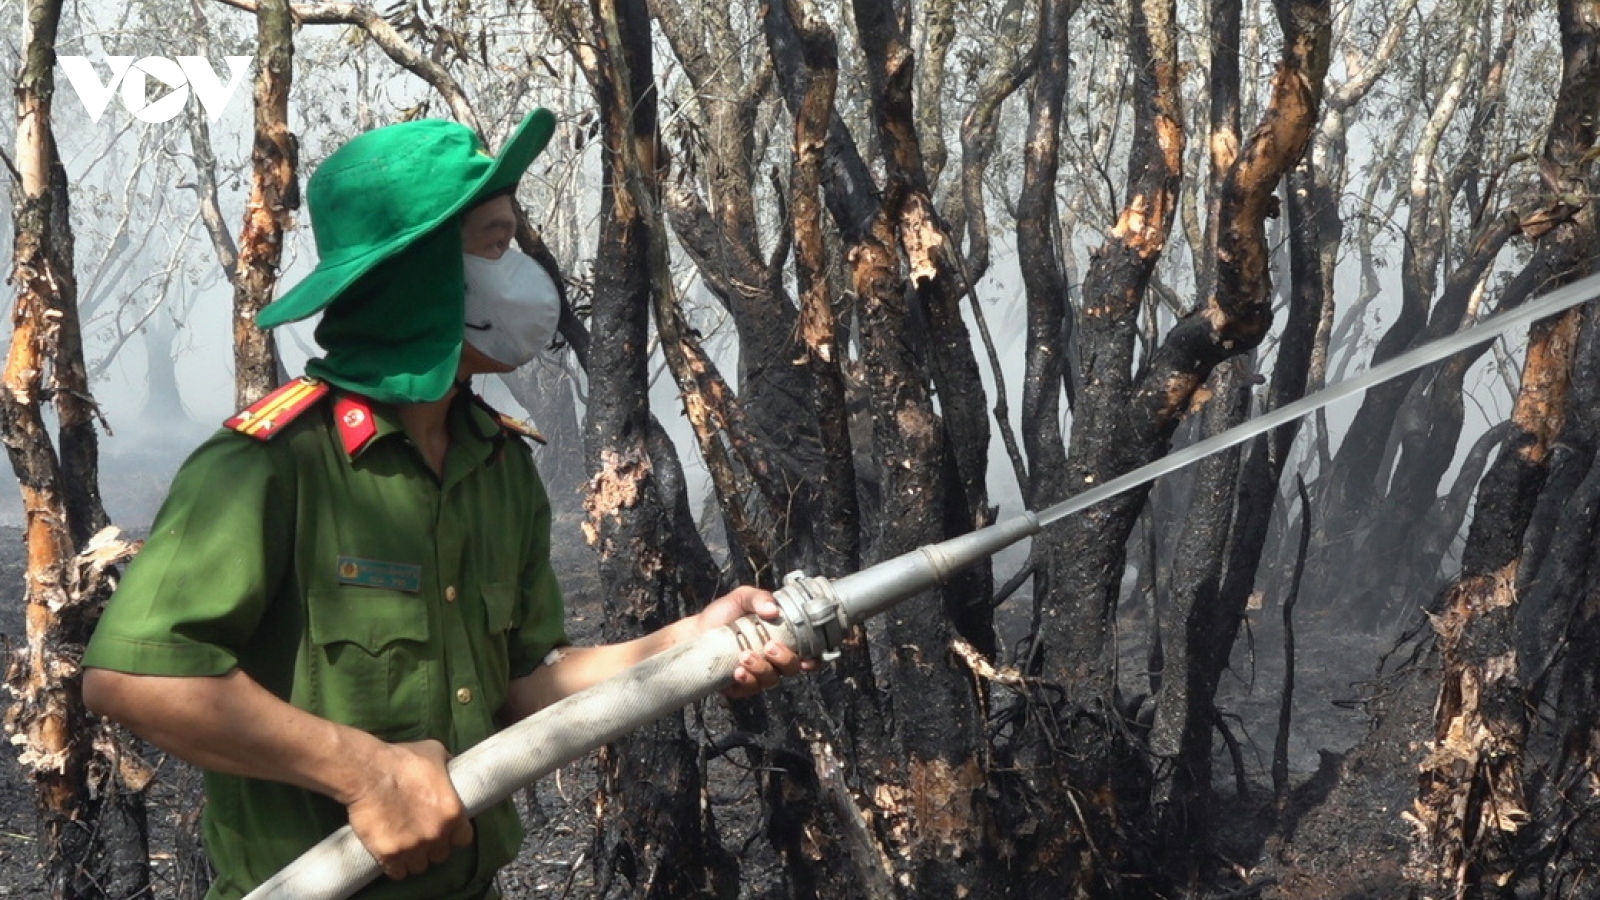 Cháy ở Vườn quốc gia Tràm Chim: Nhận định có người dùng lửa bất cẩn